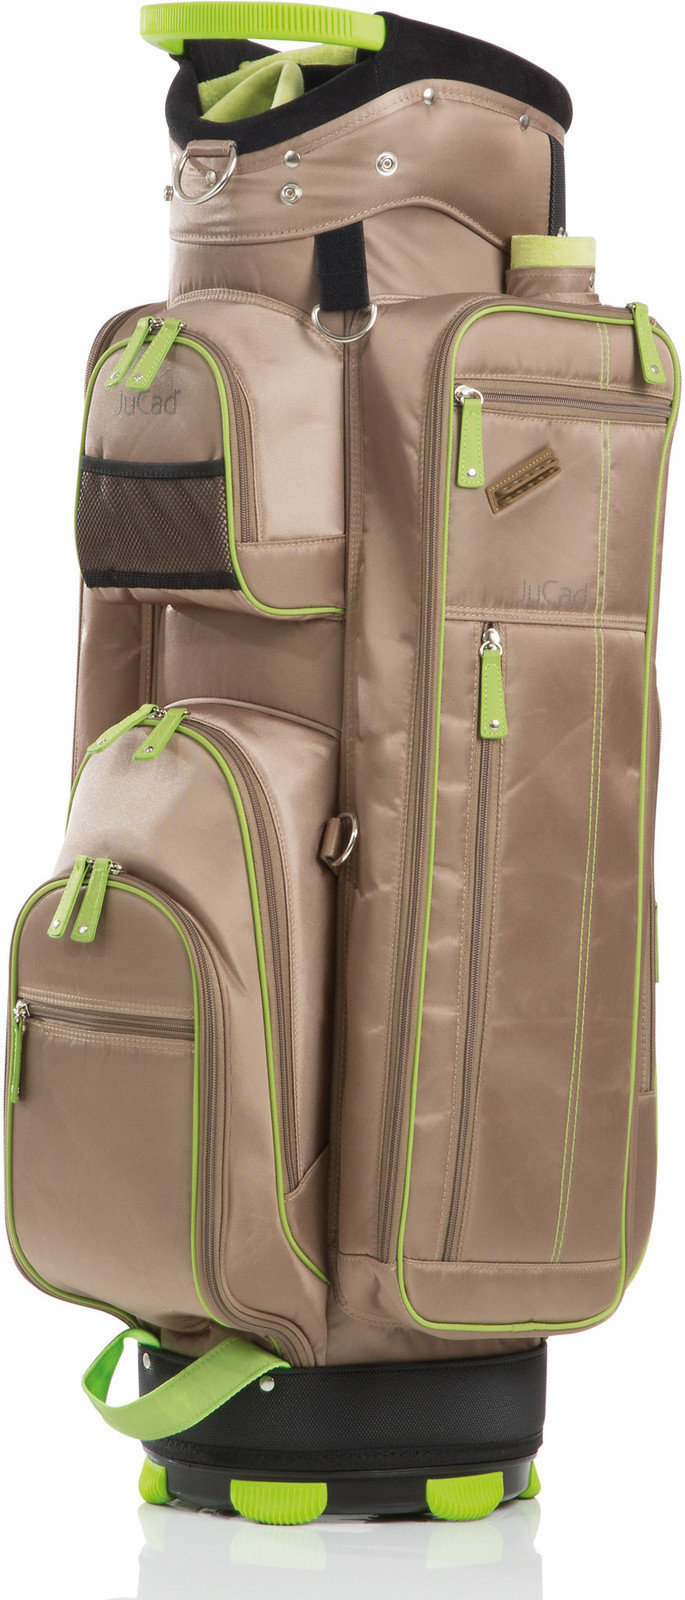 Golfbag Jucad Function Plus Beige/Green Golfbag